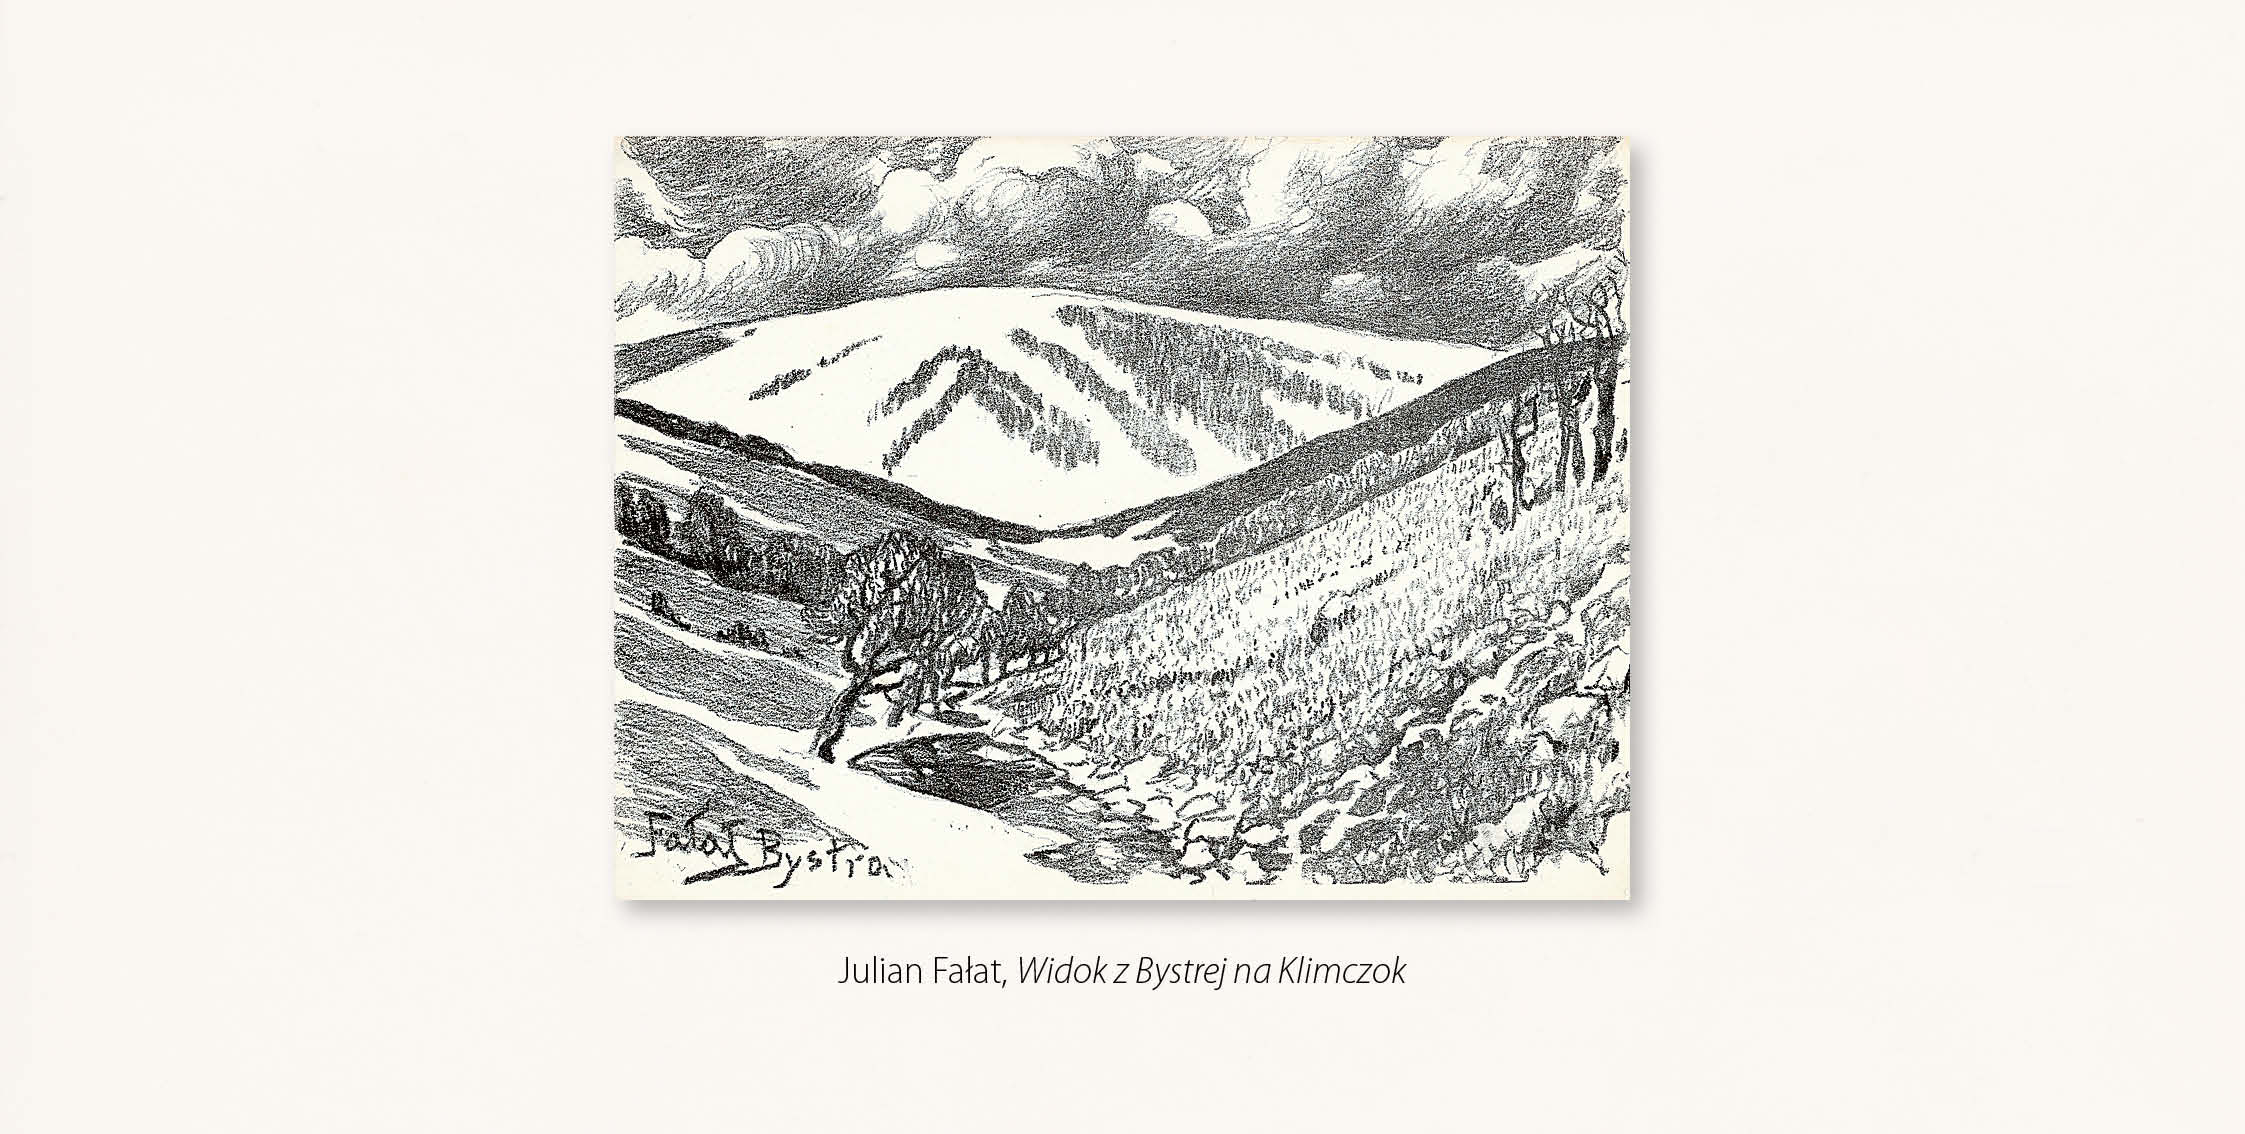 Grafika: Julian Fałat, Widok z Bystrej na Klimczok – horyzontalna kompozycja przedstawia rozległą dolinę zamkniętą łagodnie wypiętrzonym zboczem.